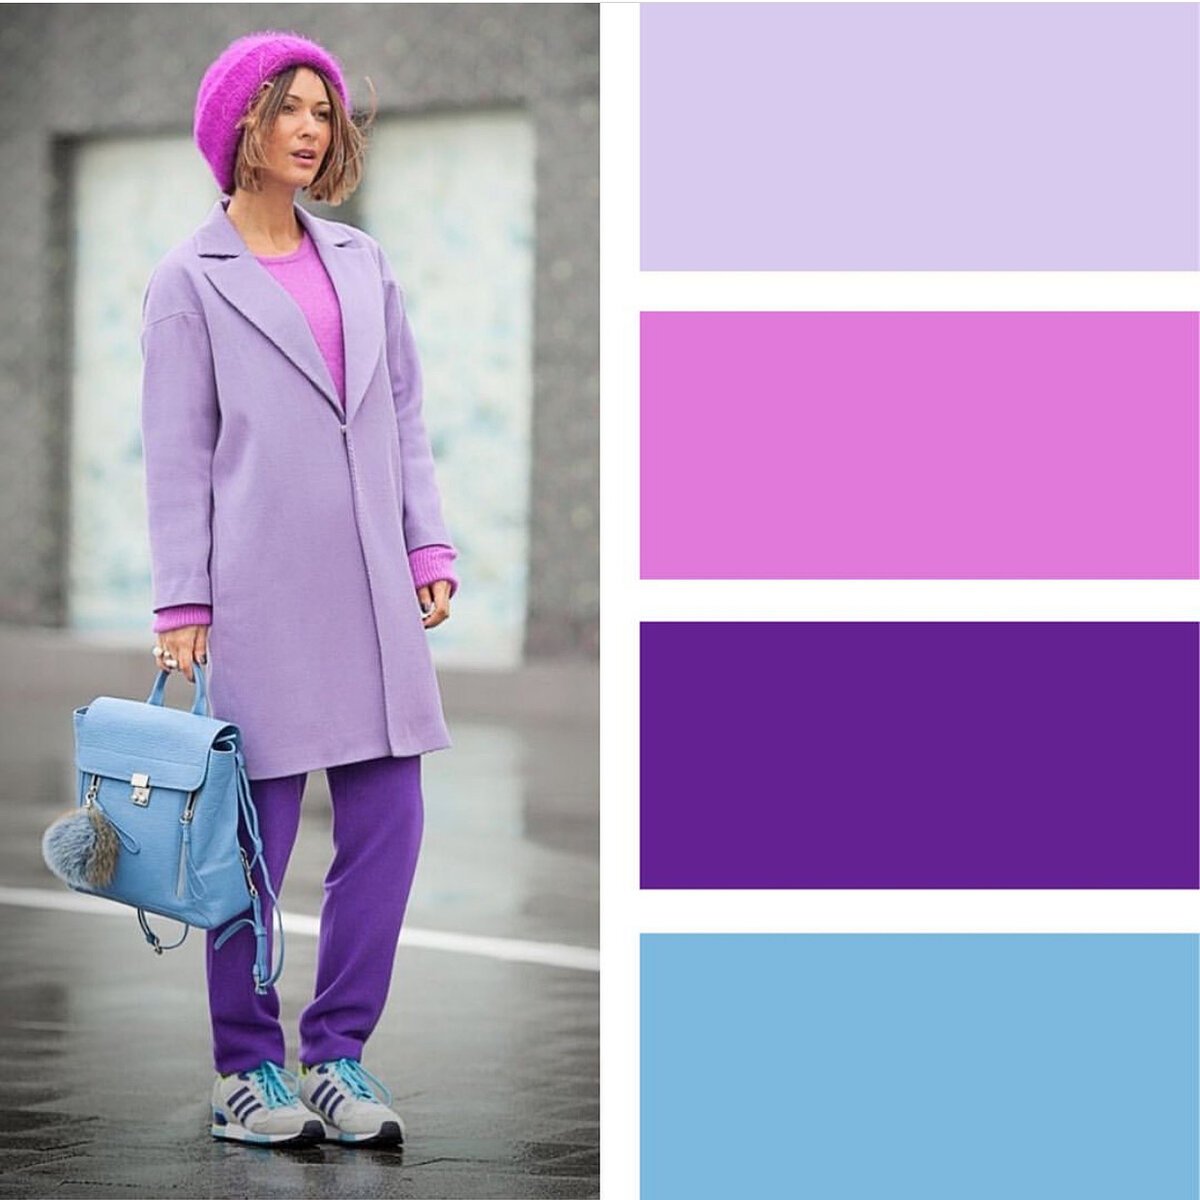 С какими цветами сочетается фиолетовый цвет в одежде женщины фото